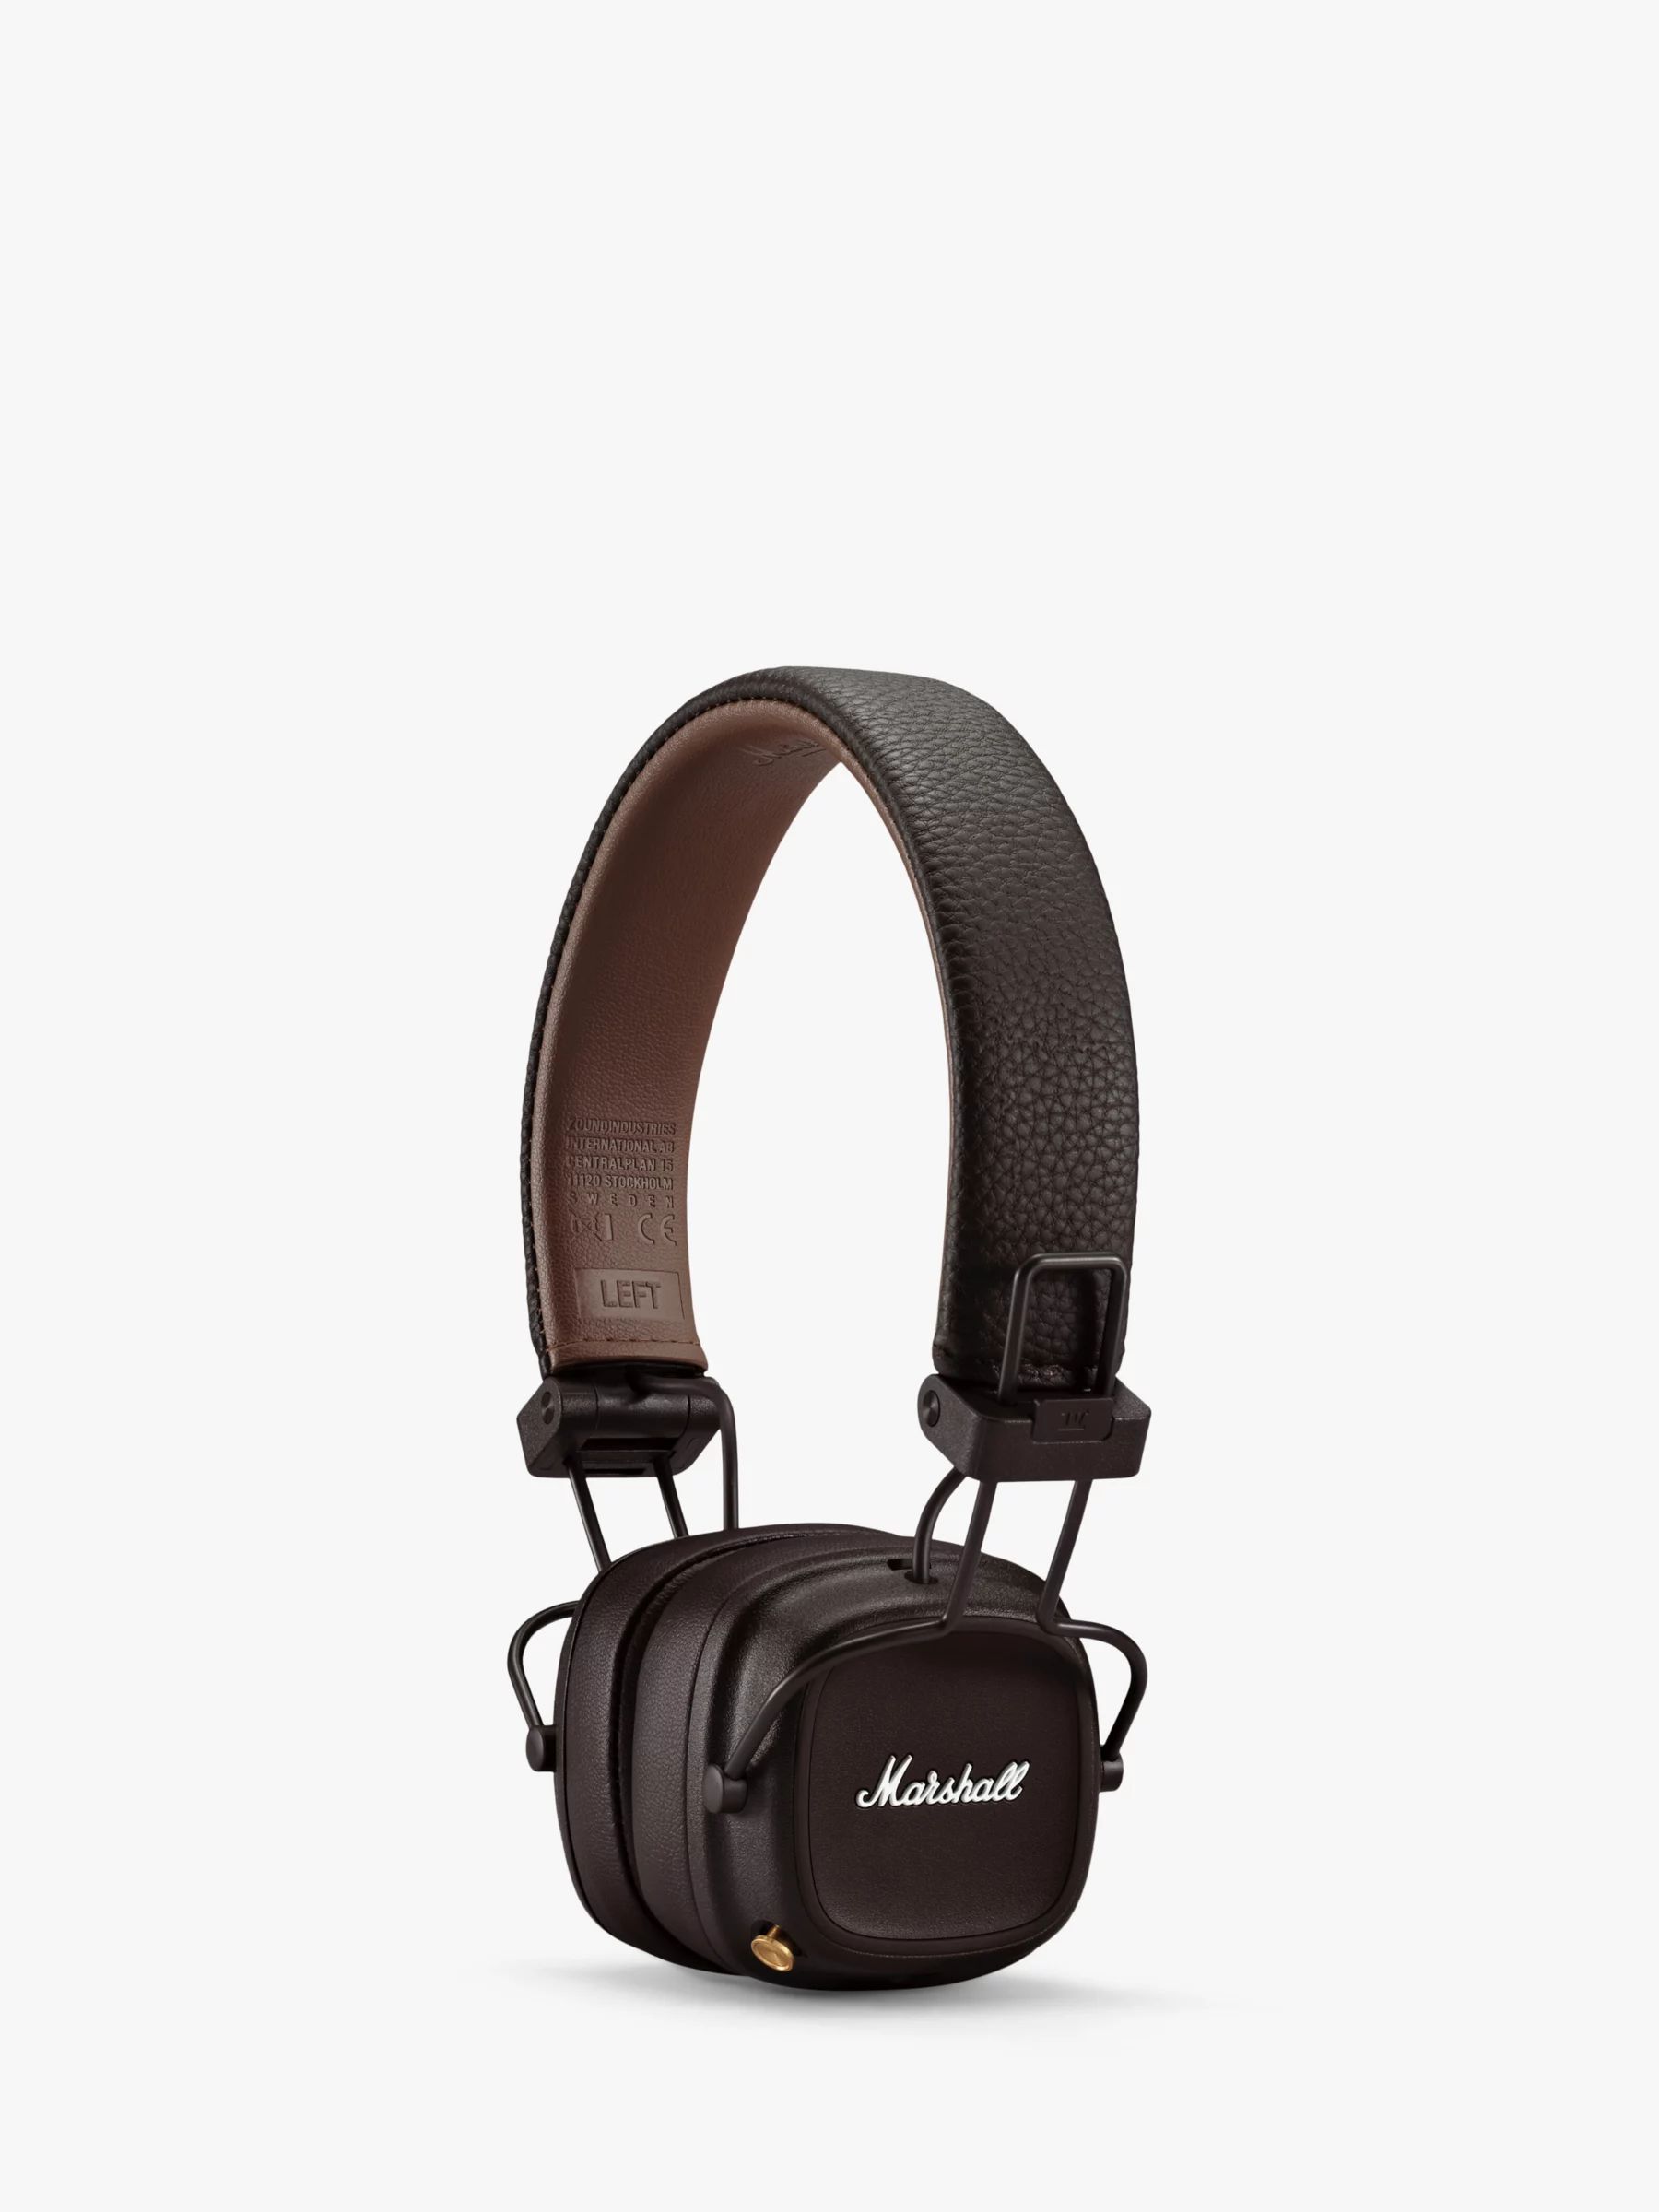 Marshall Major IV Wireless Bluetooth On-Ear Headphones | John Lewis (UK)